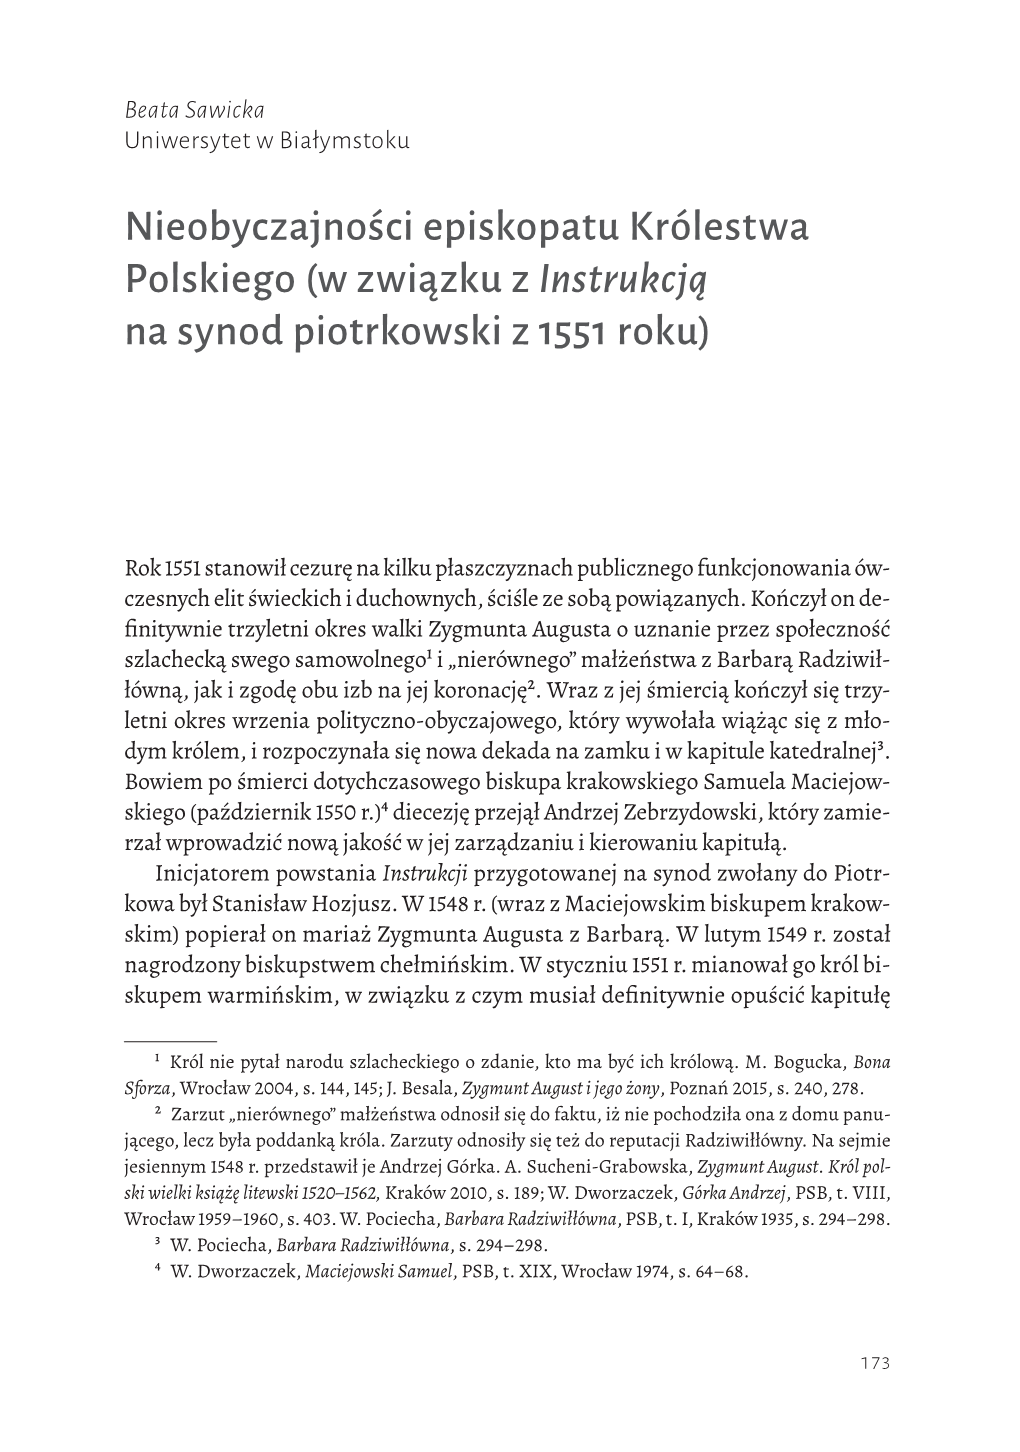 Nieobyczajności Episkopatu Królestwa Polskiego (W Związku Z Instrukcją Na Synod Piotrkowski Z 1551 Roku)